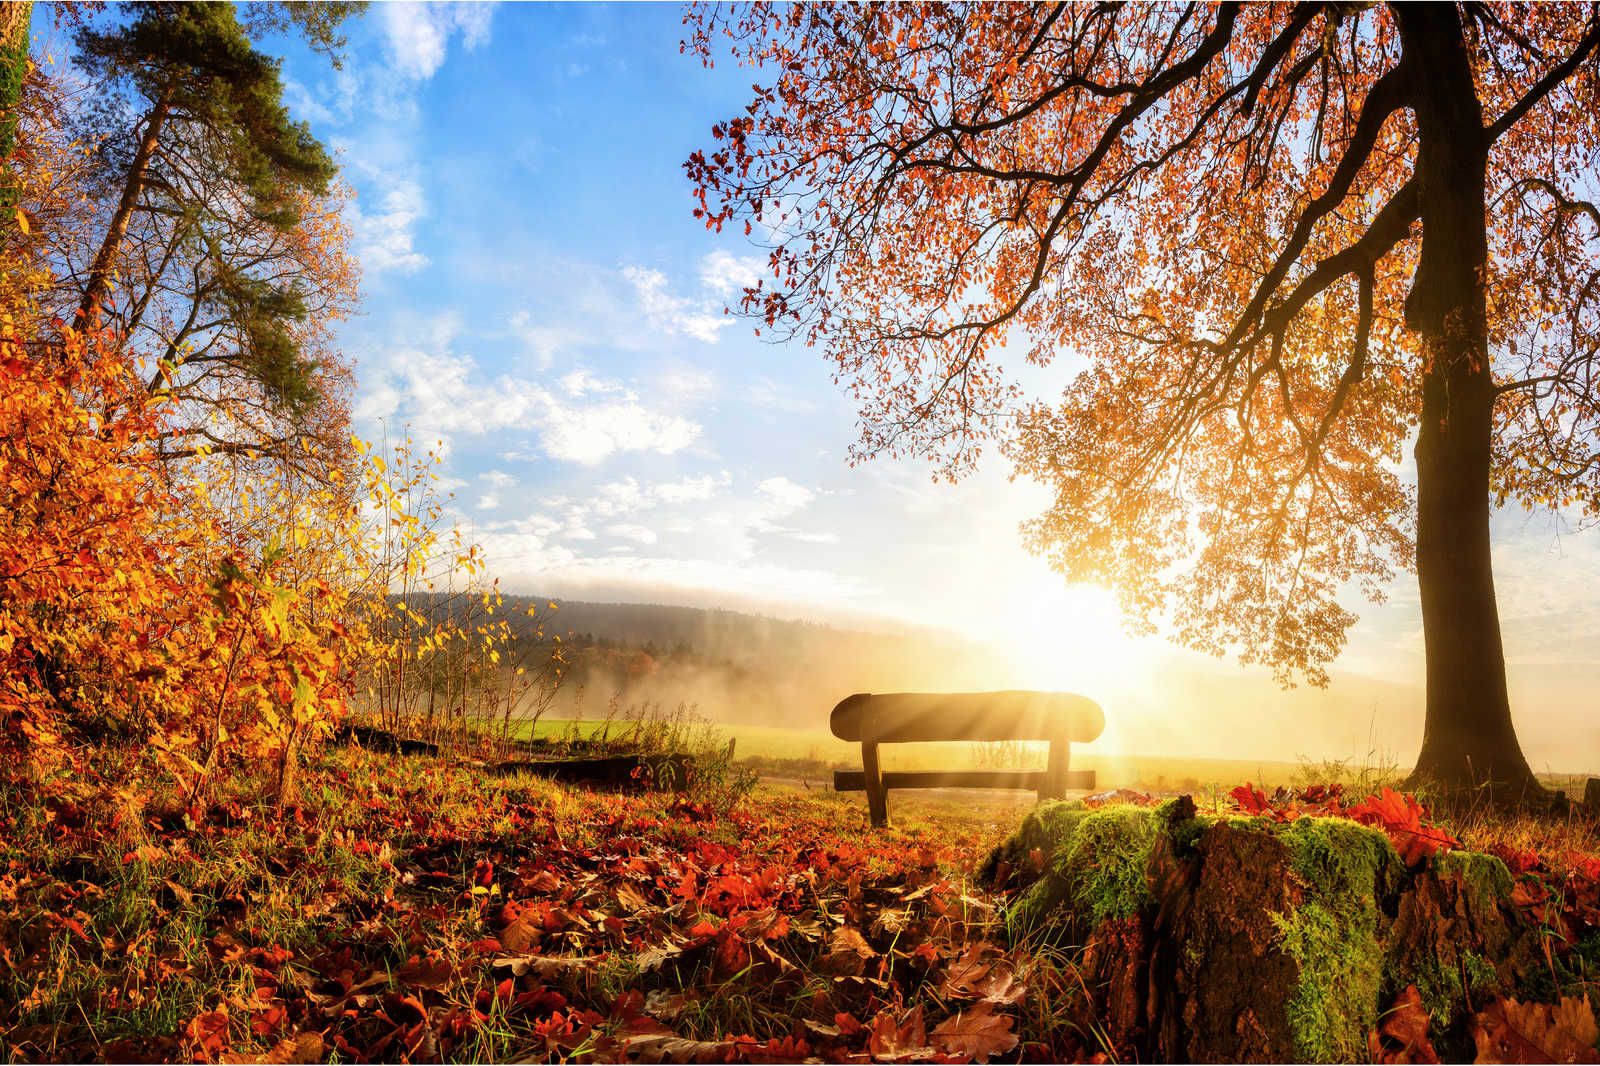             Quadro su tela Panchina nel bosco in una mattina d'autunno - 0,90 m x 0,60 m
        